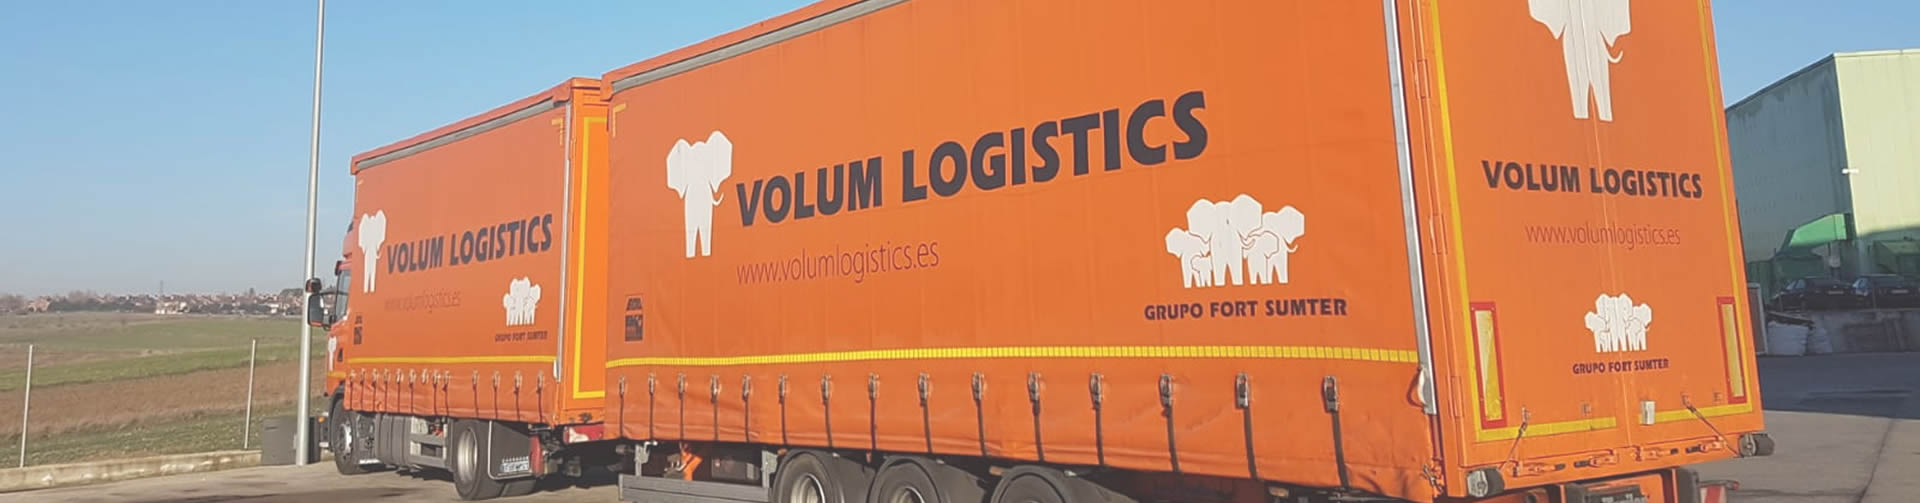 volum logistics 2